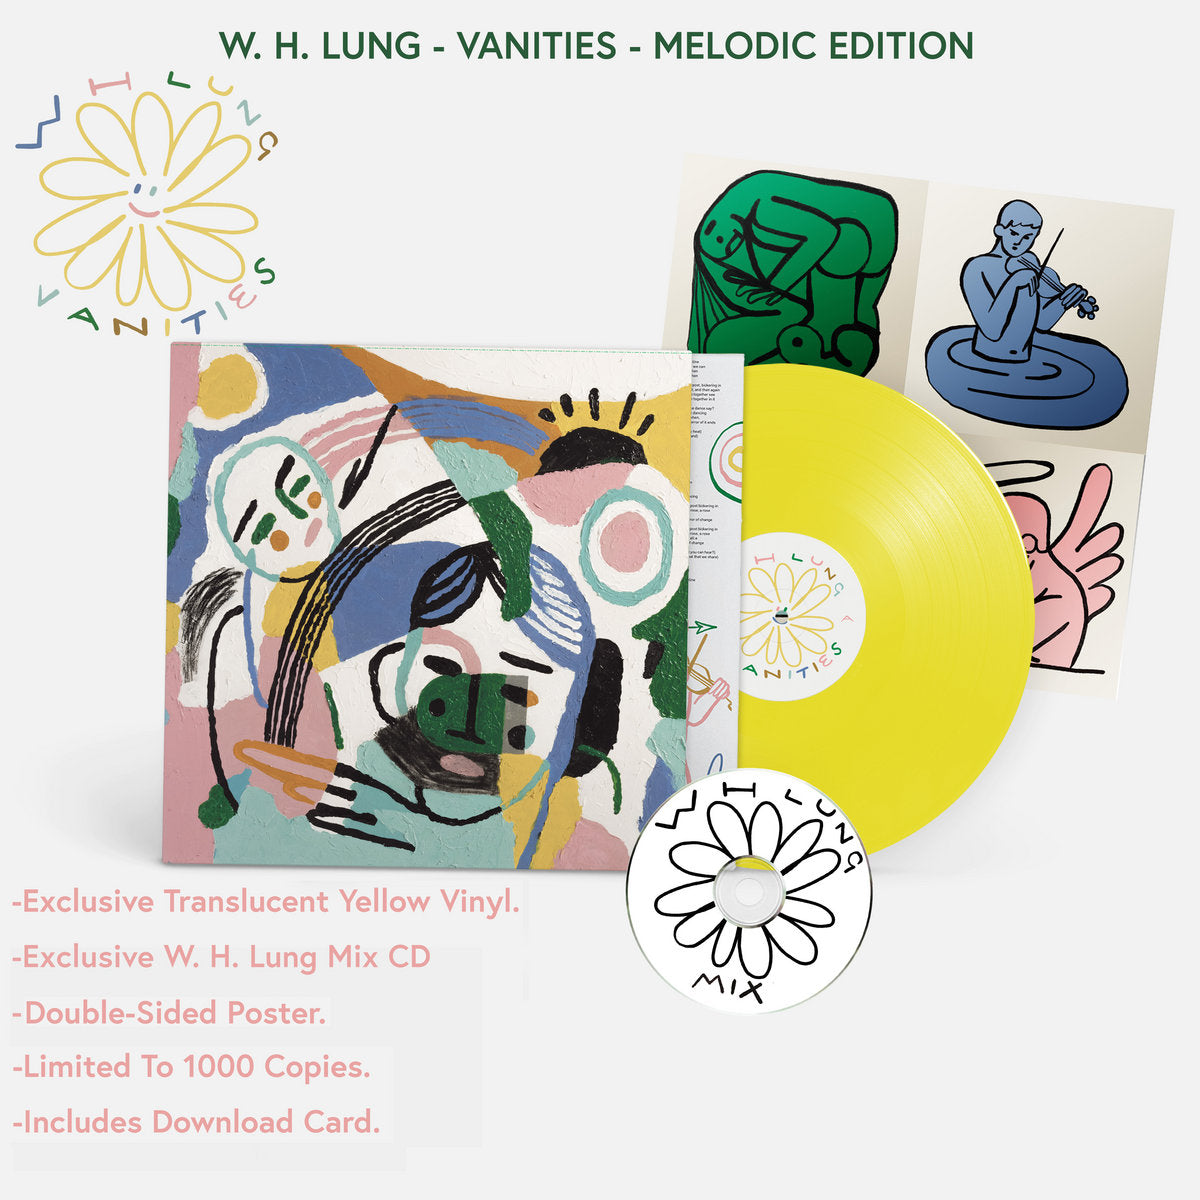 W. H. Lung - Vanities